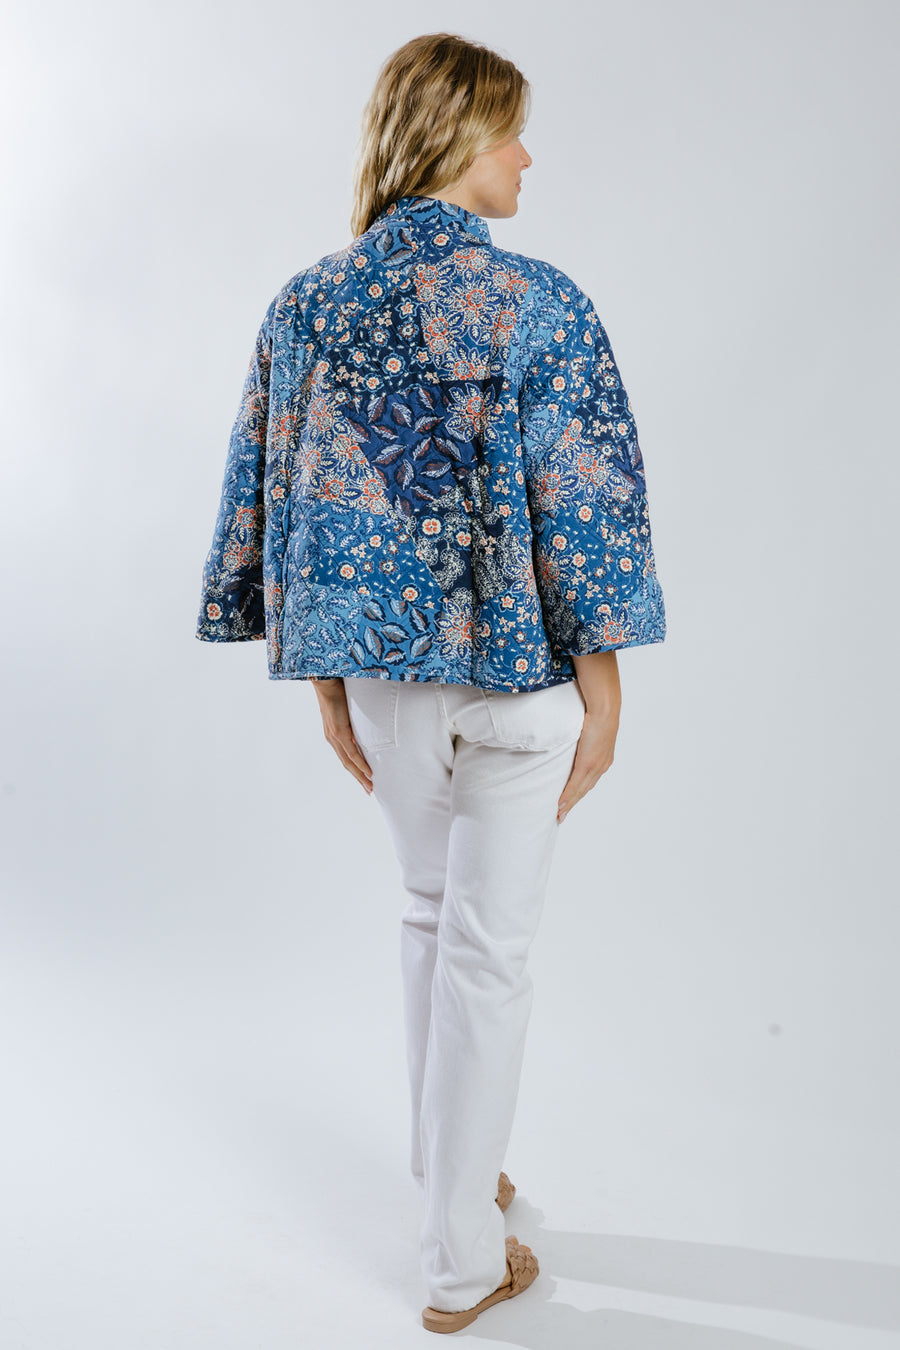 Berdina Kimono Jacket